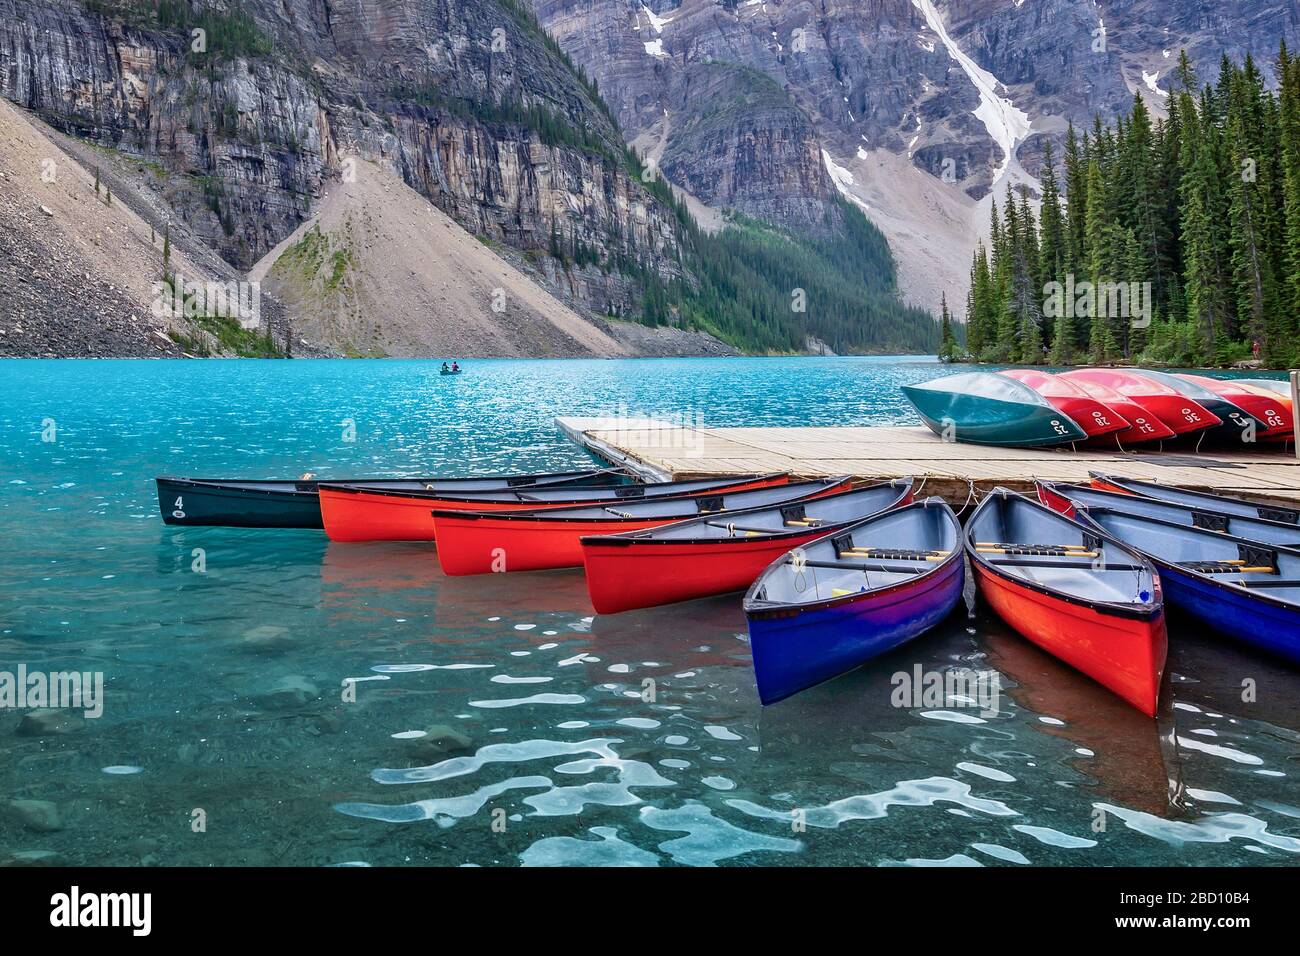 Canoës corloriques sur le lac Moraine près du village de Lake Louise dans le parc national Banff, en Alberta, dans les montagnes Rocheuses, au Canada Banque D'Images